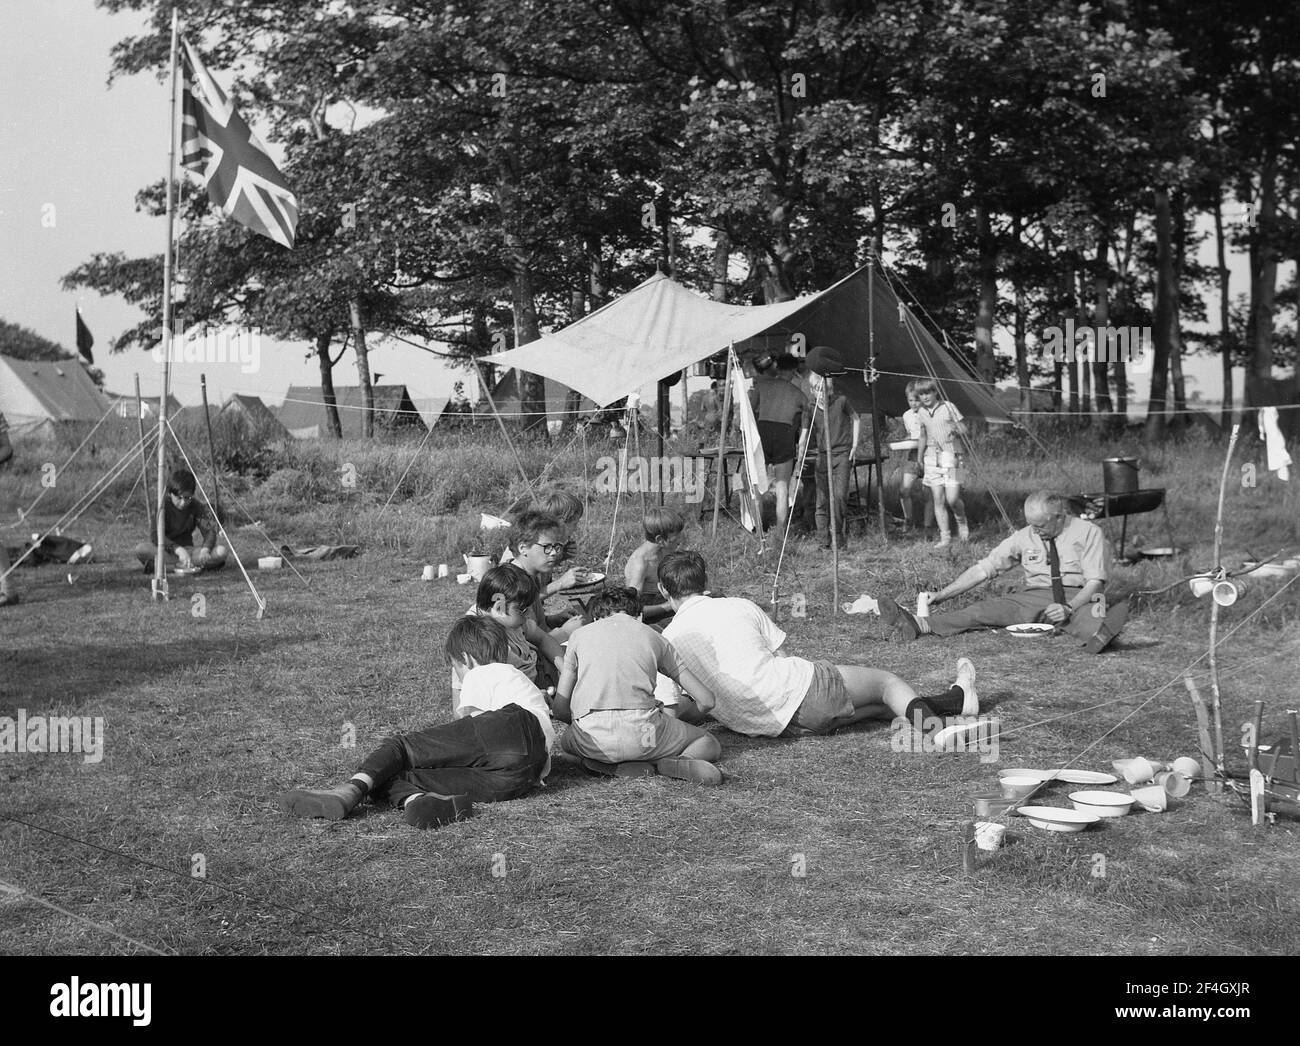 1969, historisch, Jungen in einem Sommer-Pfadfinderlager, sitzend auf dem Gras, Essen zu essen, auf dem Gelände von Temple Newsam, Leeds, England, Großbritannien. Auf einem Fahnenmast befindet sich eine Anschlussbuchse. Stockfoto